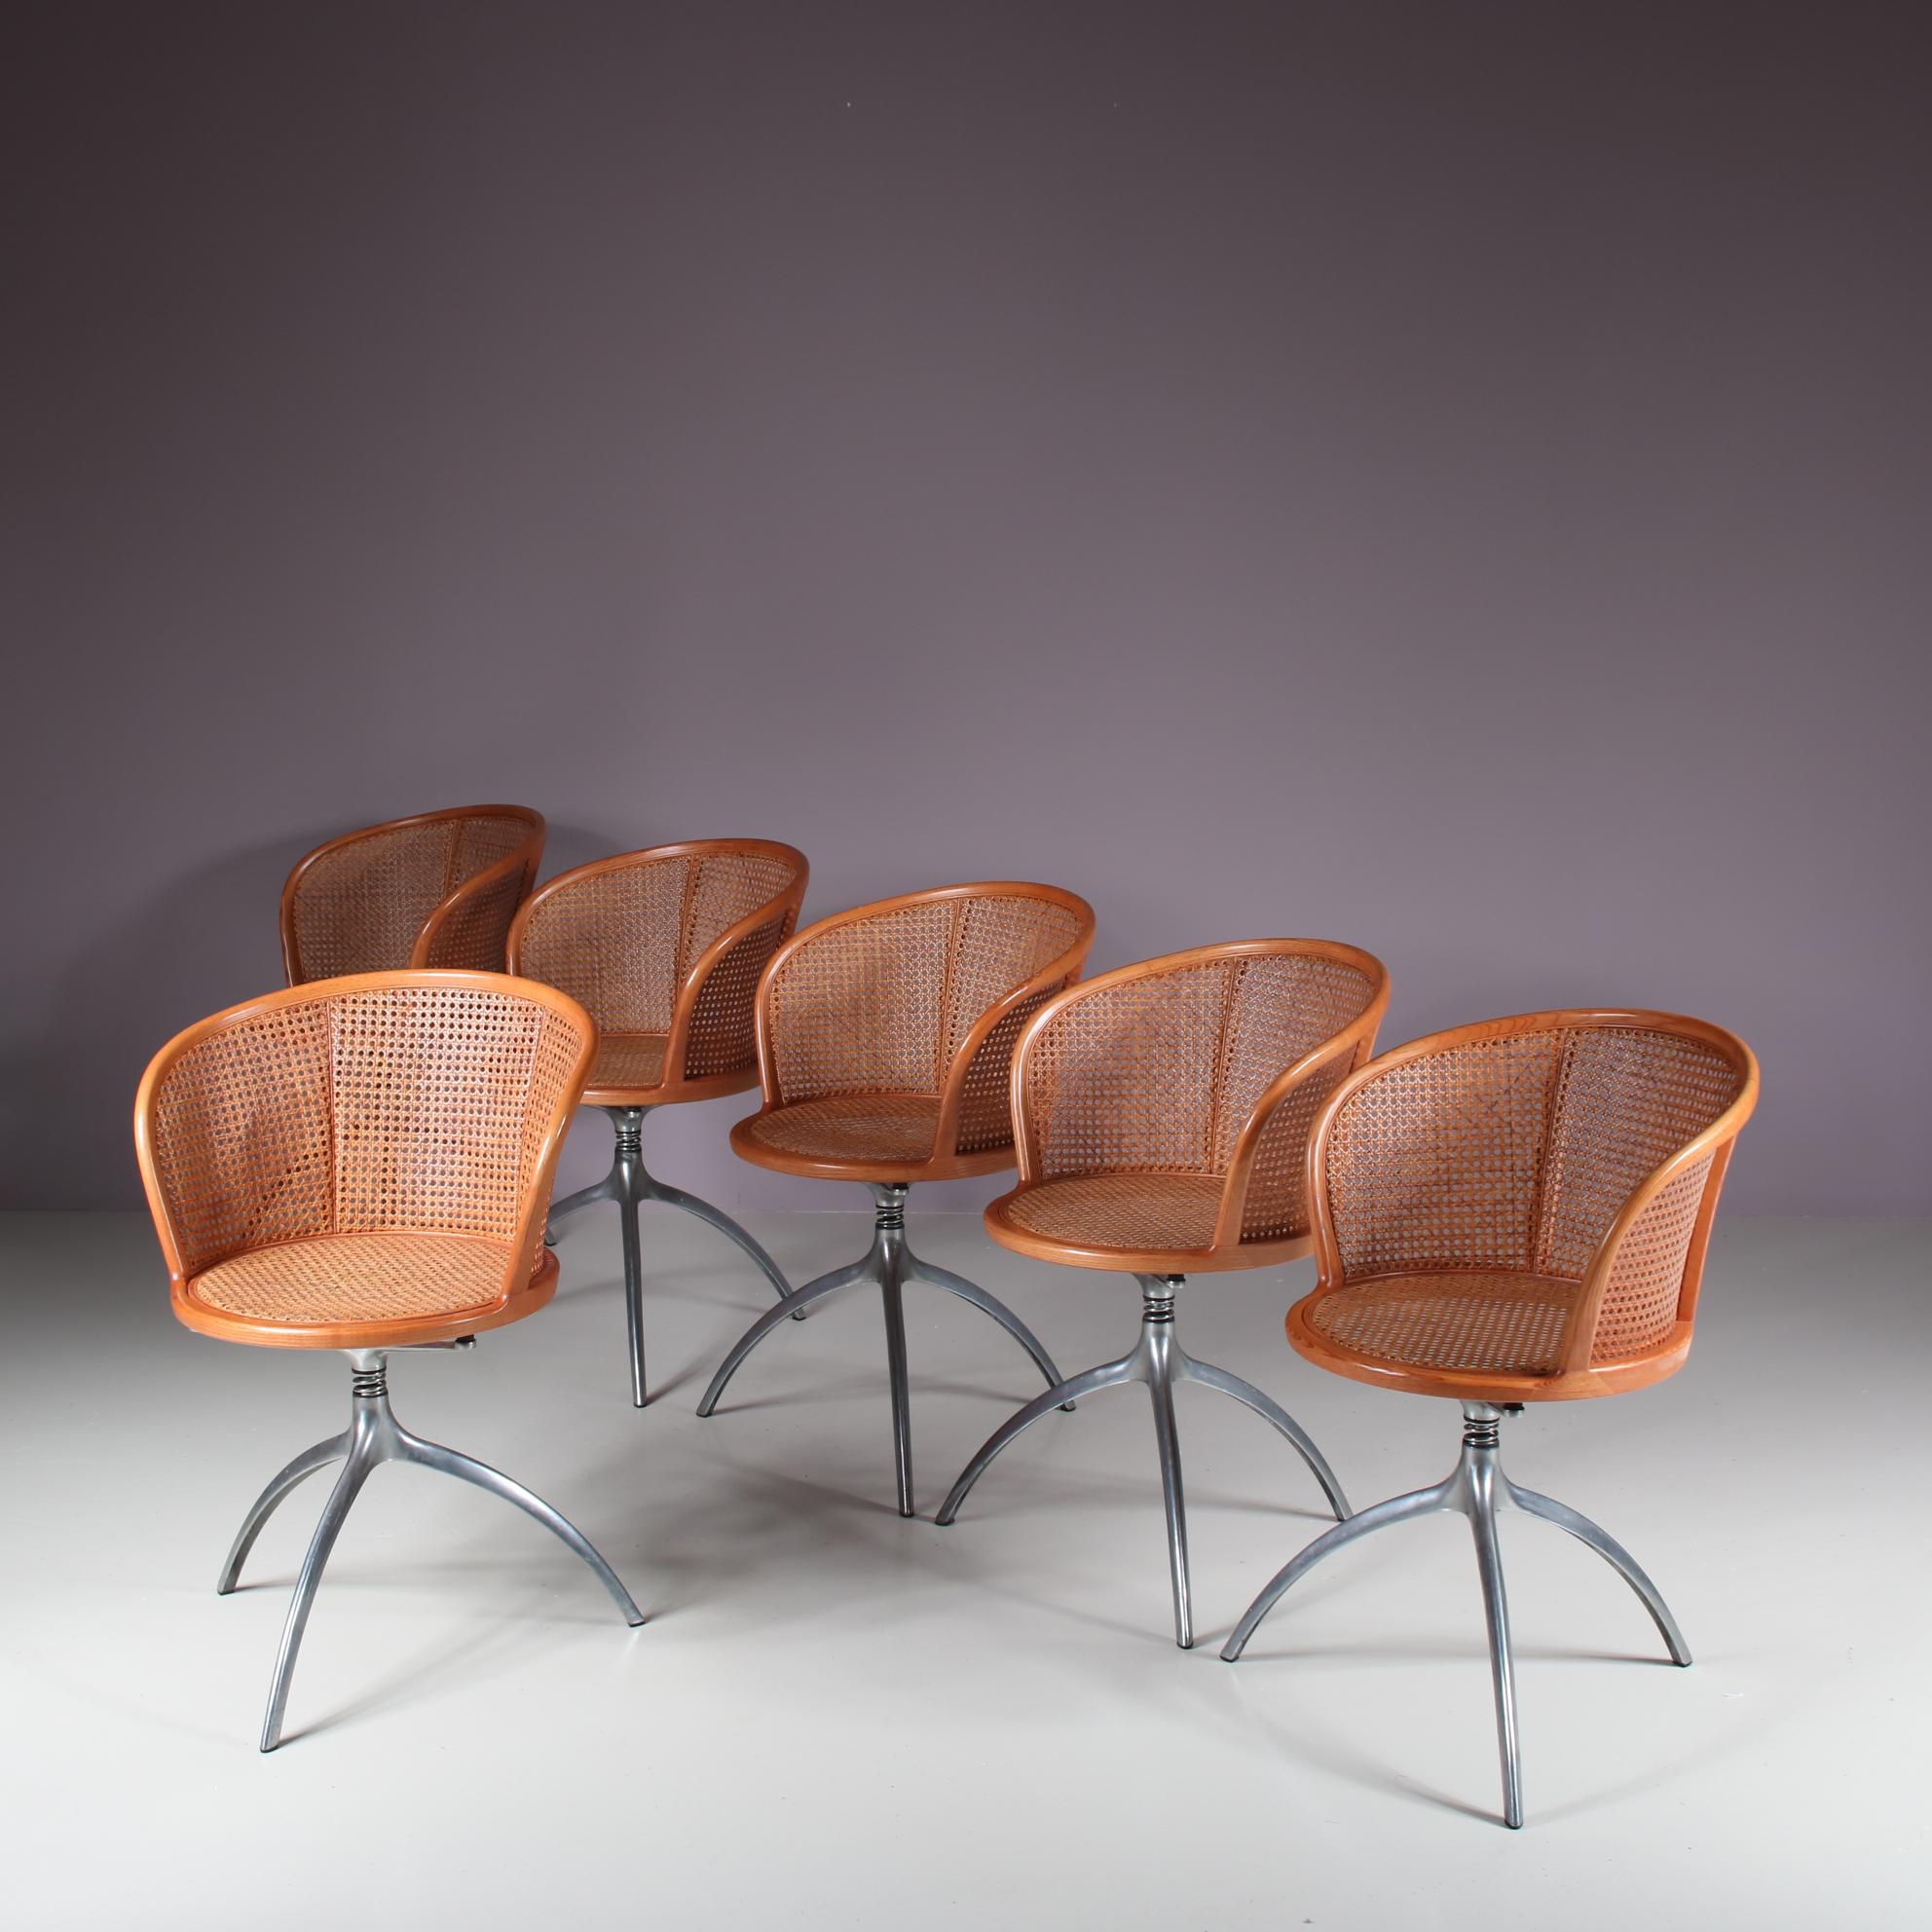 Un fantastique ensemble de six chaises, modèle 901 également connu sous le nom de chaises 